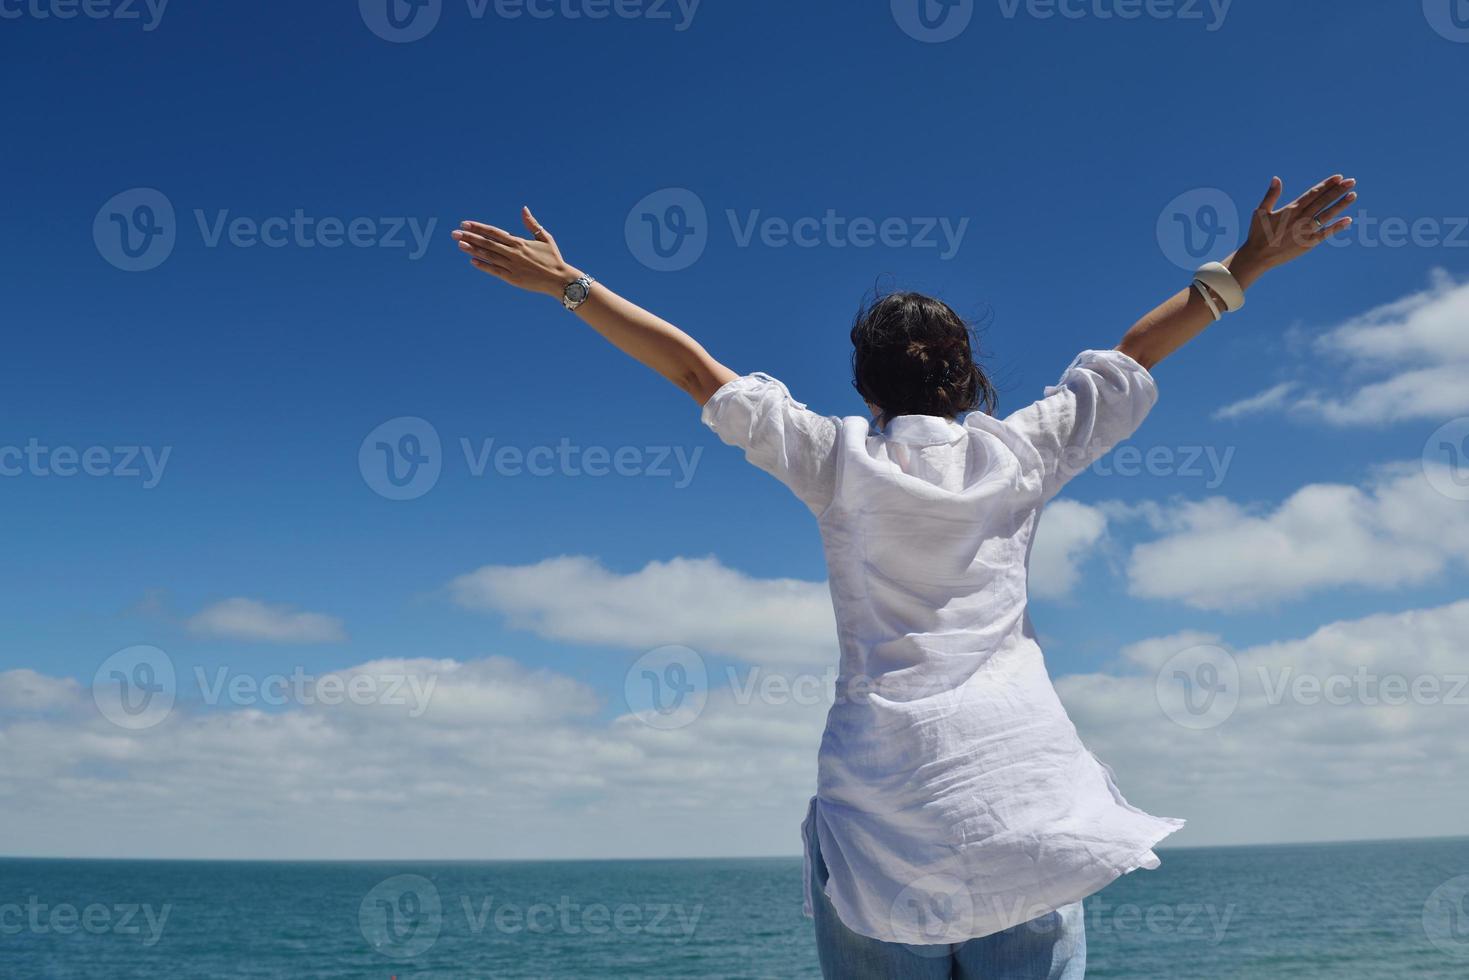 mujer joven feliz con los brazos extendidos al cielo foto